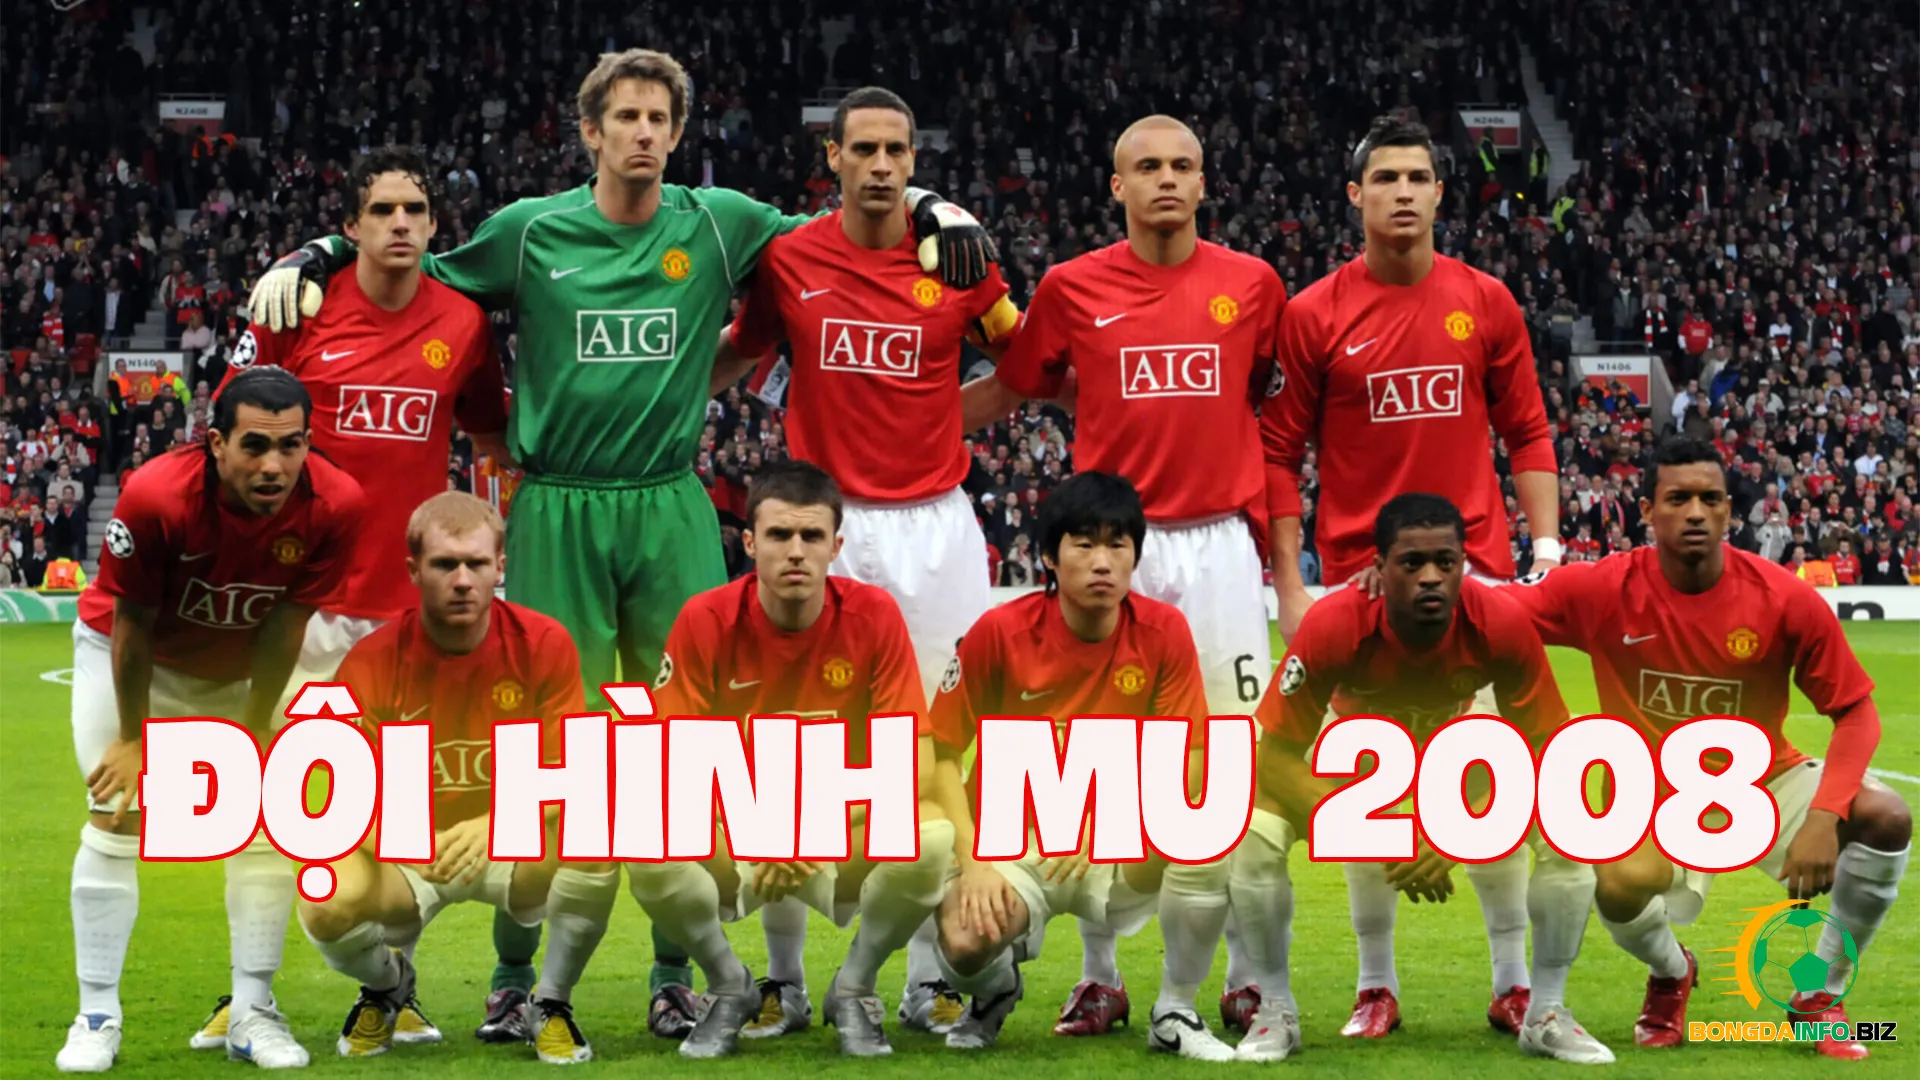 Nhìn lại hành trình đội hình MU vô địch C1 2008